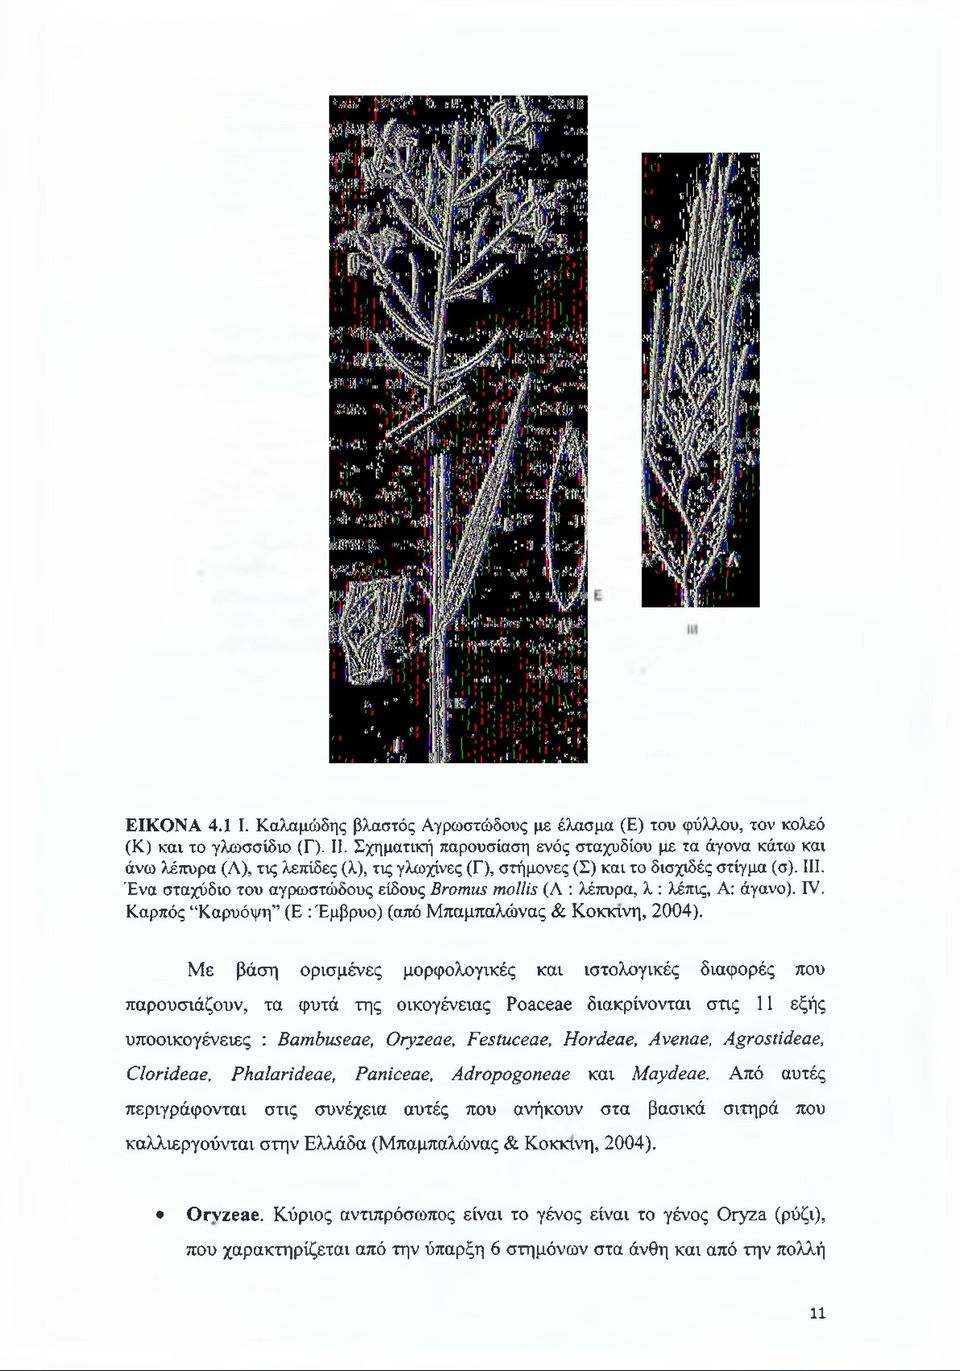 Ένα σταχύδιο του αγρωστώδους είδους Bromus mollis (Λ : λέπυρα, λ : λέπις, Α: άγανο). IV. Καρπός Καρυόψη (Ε : Έμβρυο) (από Μπαμπαλώνας & Κόκκινη, 2004).